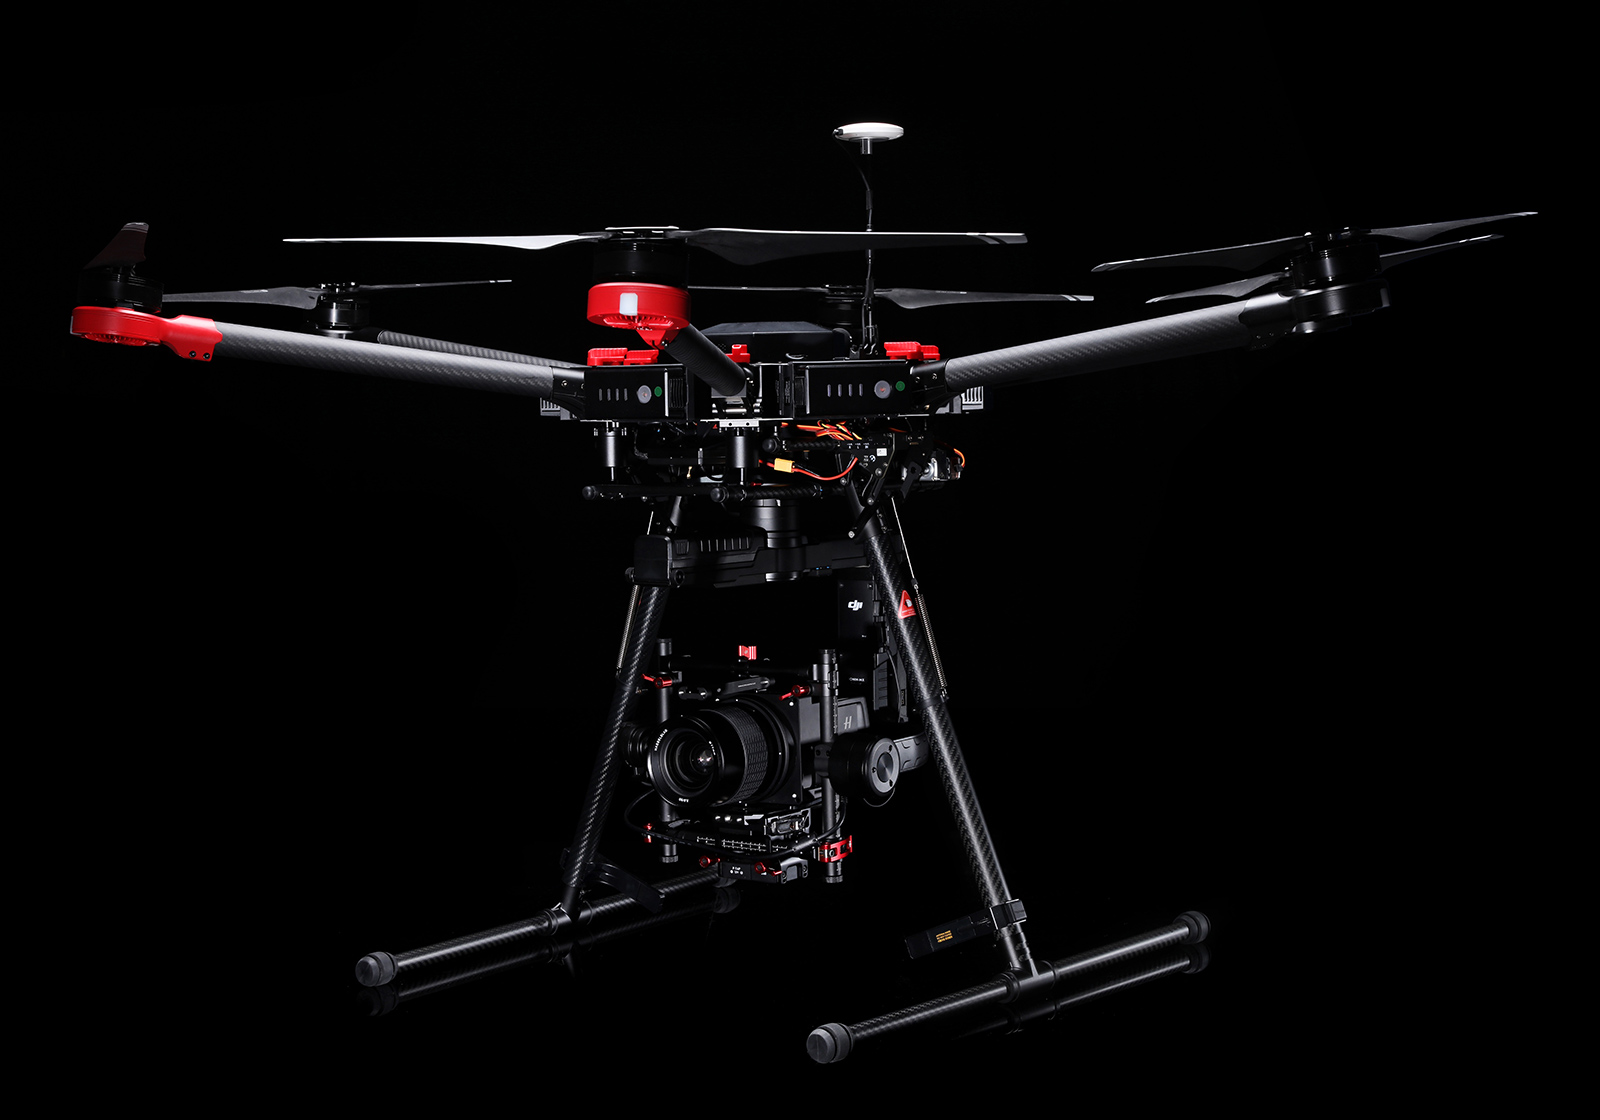 Et virkelig ikonisk selskap, Hasselblad, er visstnok eid av den kinesiske dronemakeren Dji etter at de først kjøpte aksjer vinteren 2015. Avbildet: DJI Matrice 600 med Hasselblad-kamera.